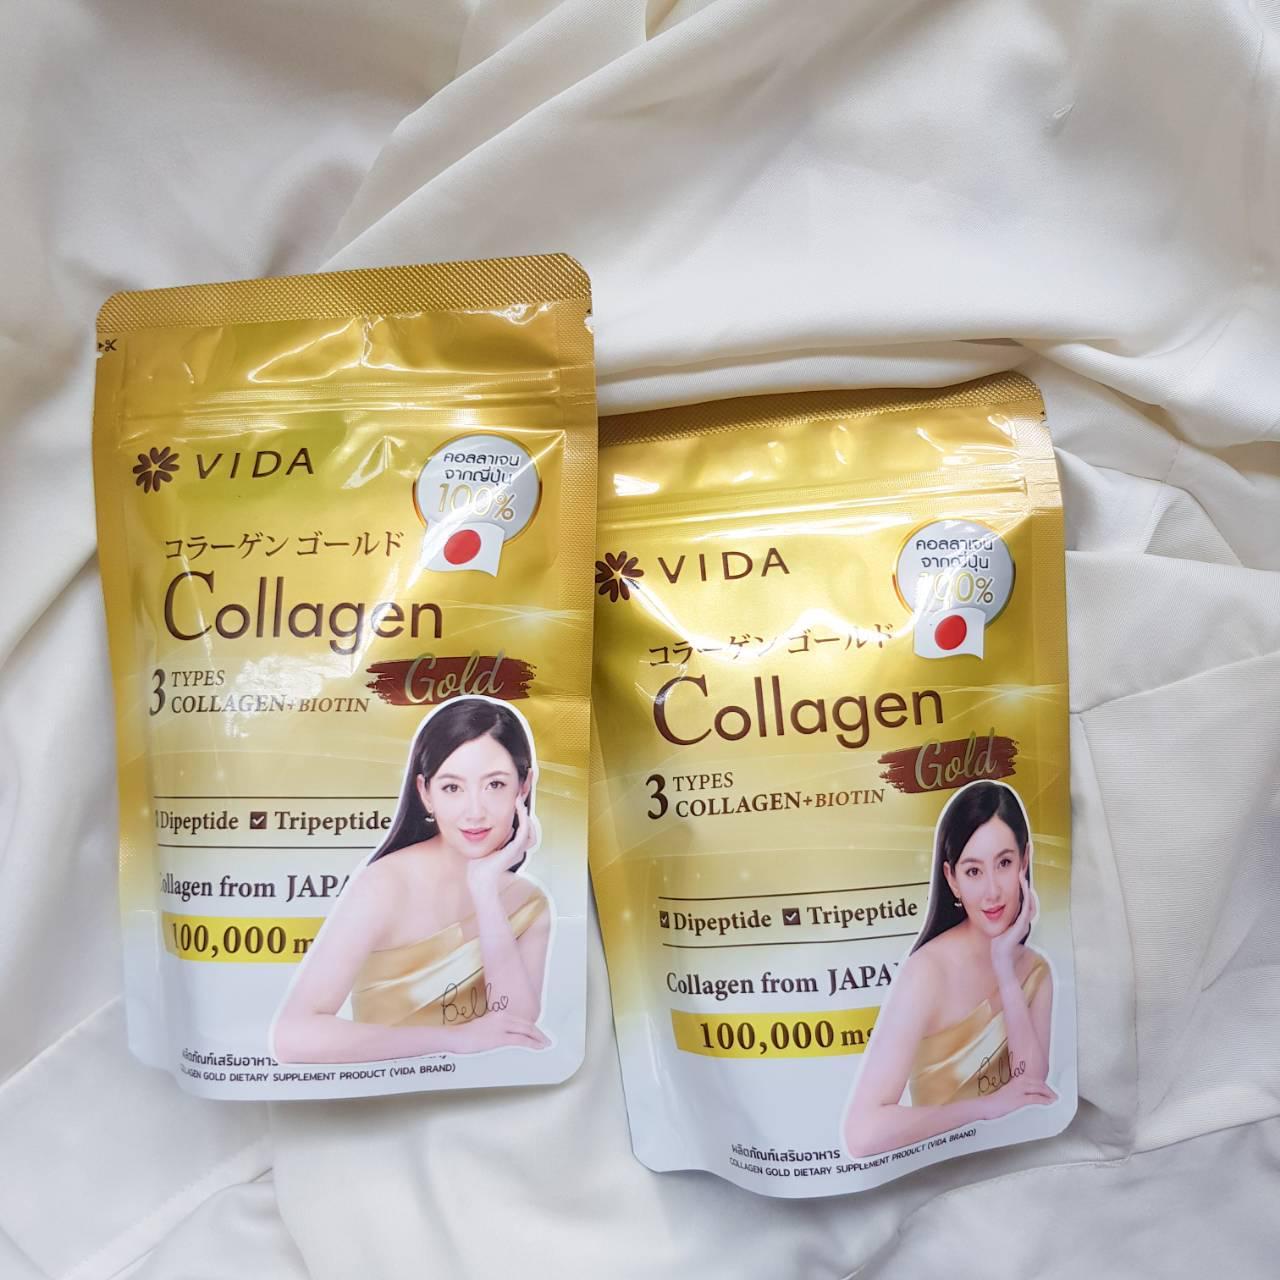 ภาพหน้าปก ผิวใสออร่าจับ Vida Collagen Gold ที่:1